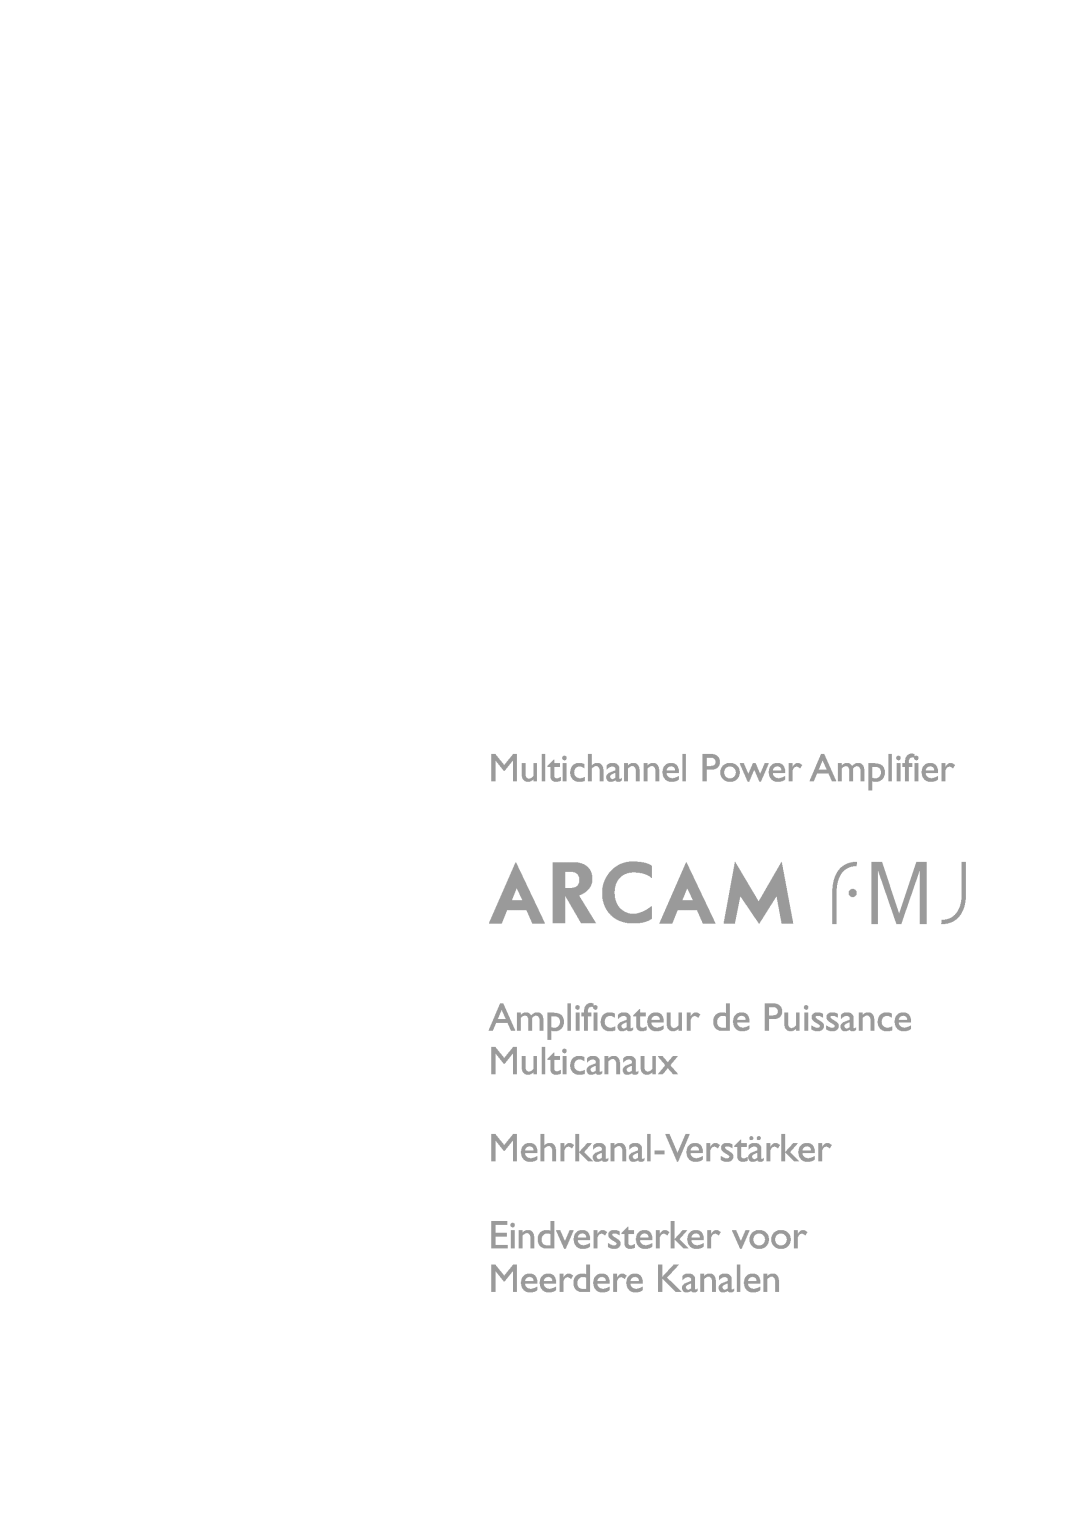 Arcam Multichannel Power Amplifier manual Amplificateur de Puissance Multicanaux, Mehrkanal-Verstärker Eindversterker voor 